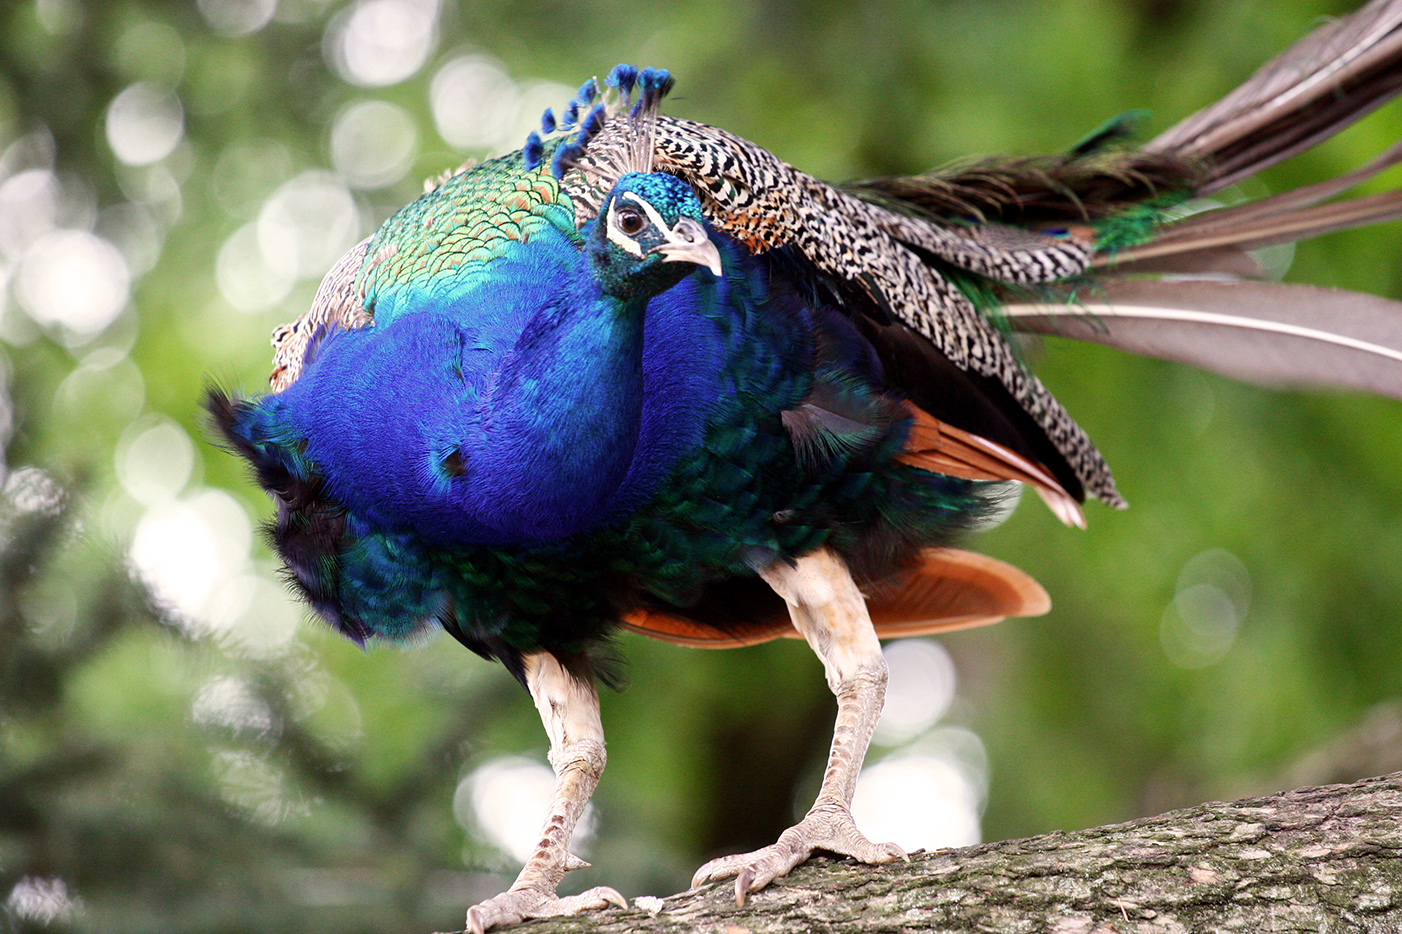 フリー写真素材 動物 鳥類 キジ科 孔雀 クジャク 画像素材なら 無料 フリー写真素材のフリーフォト